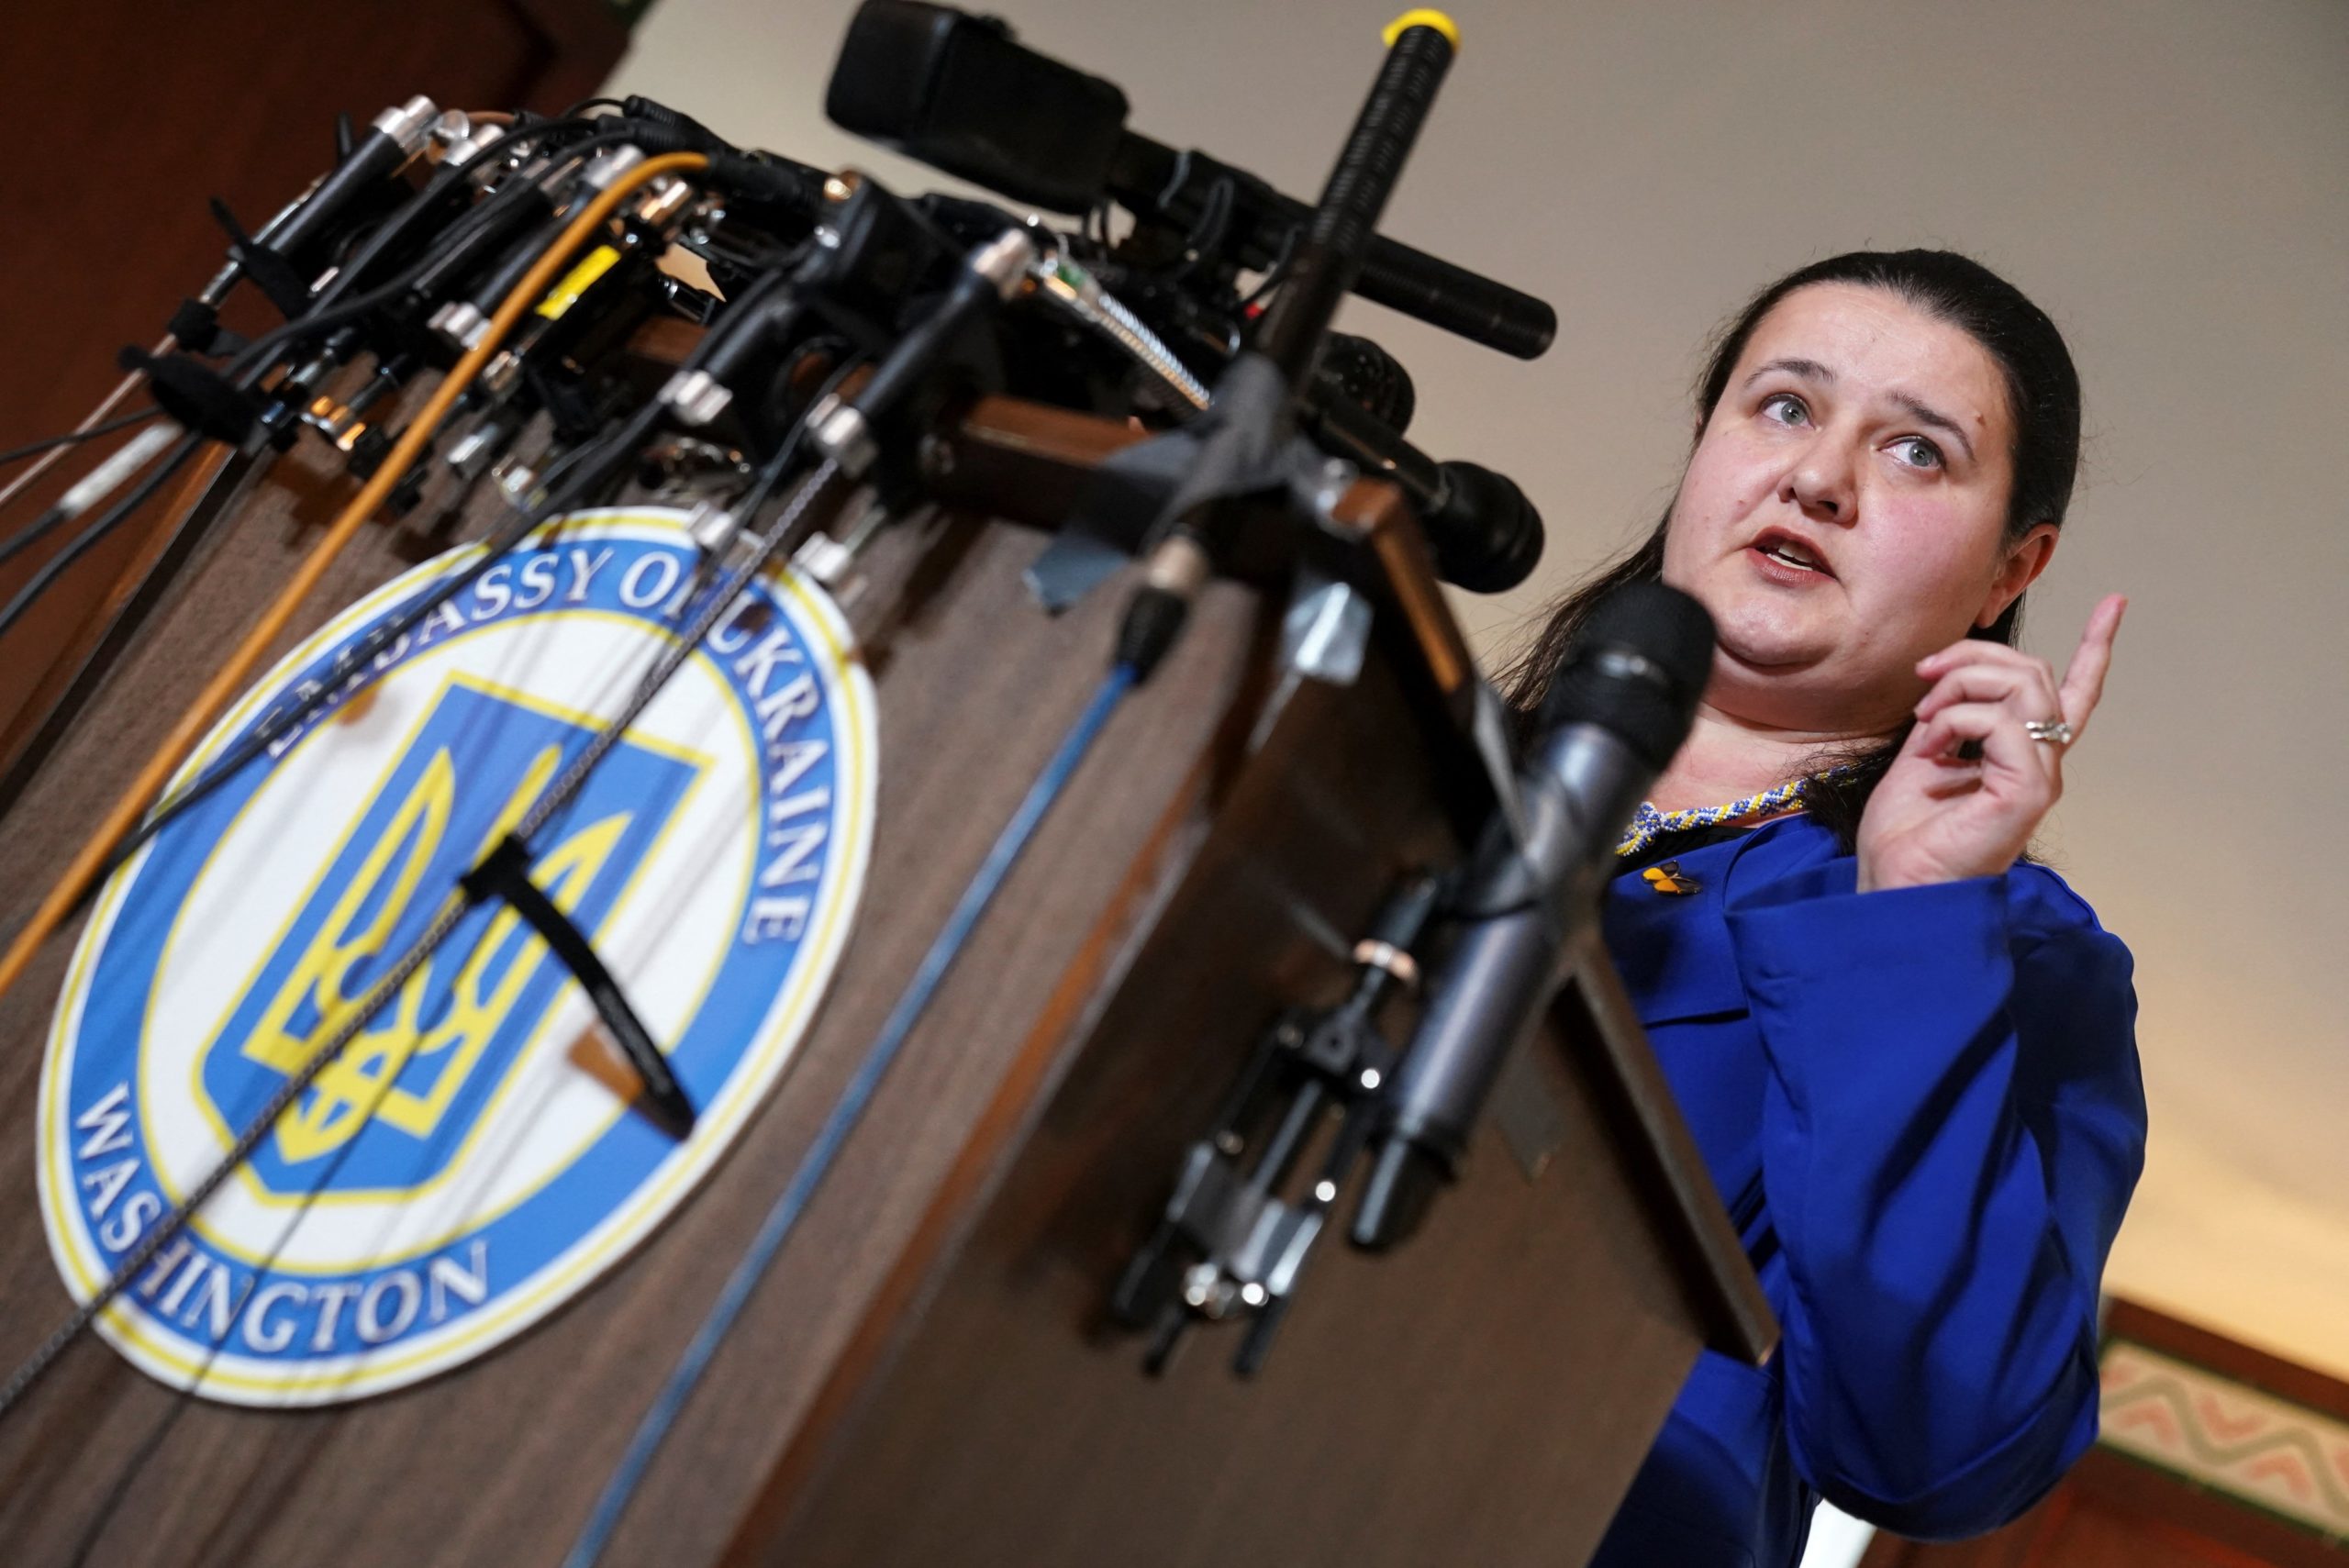 Η πρέσβειρα της Ουκρανίας στις ΗΠΑ καταγγέλλει: “Η Ρωσία έριξε θερμοβαρική βόμβα”